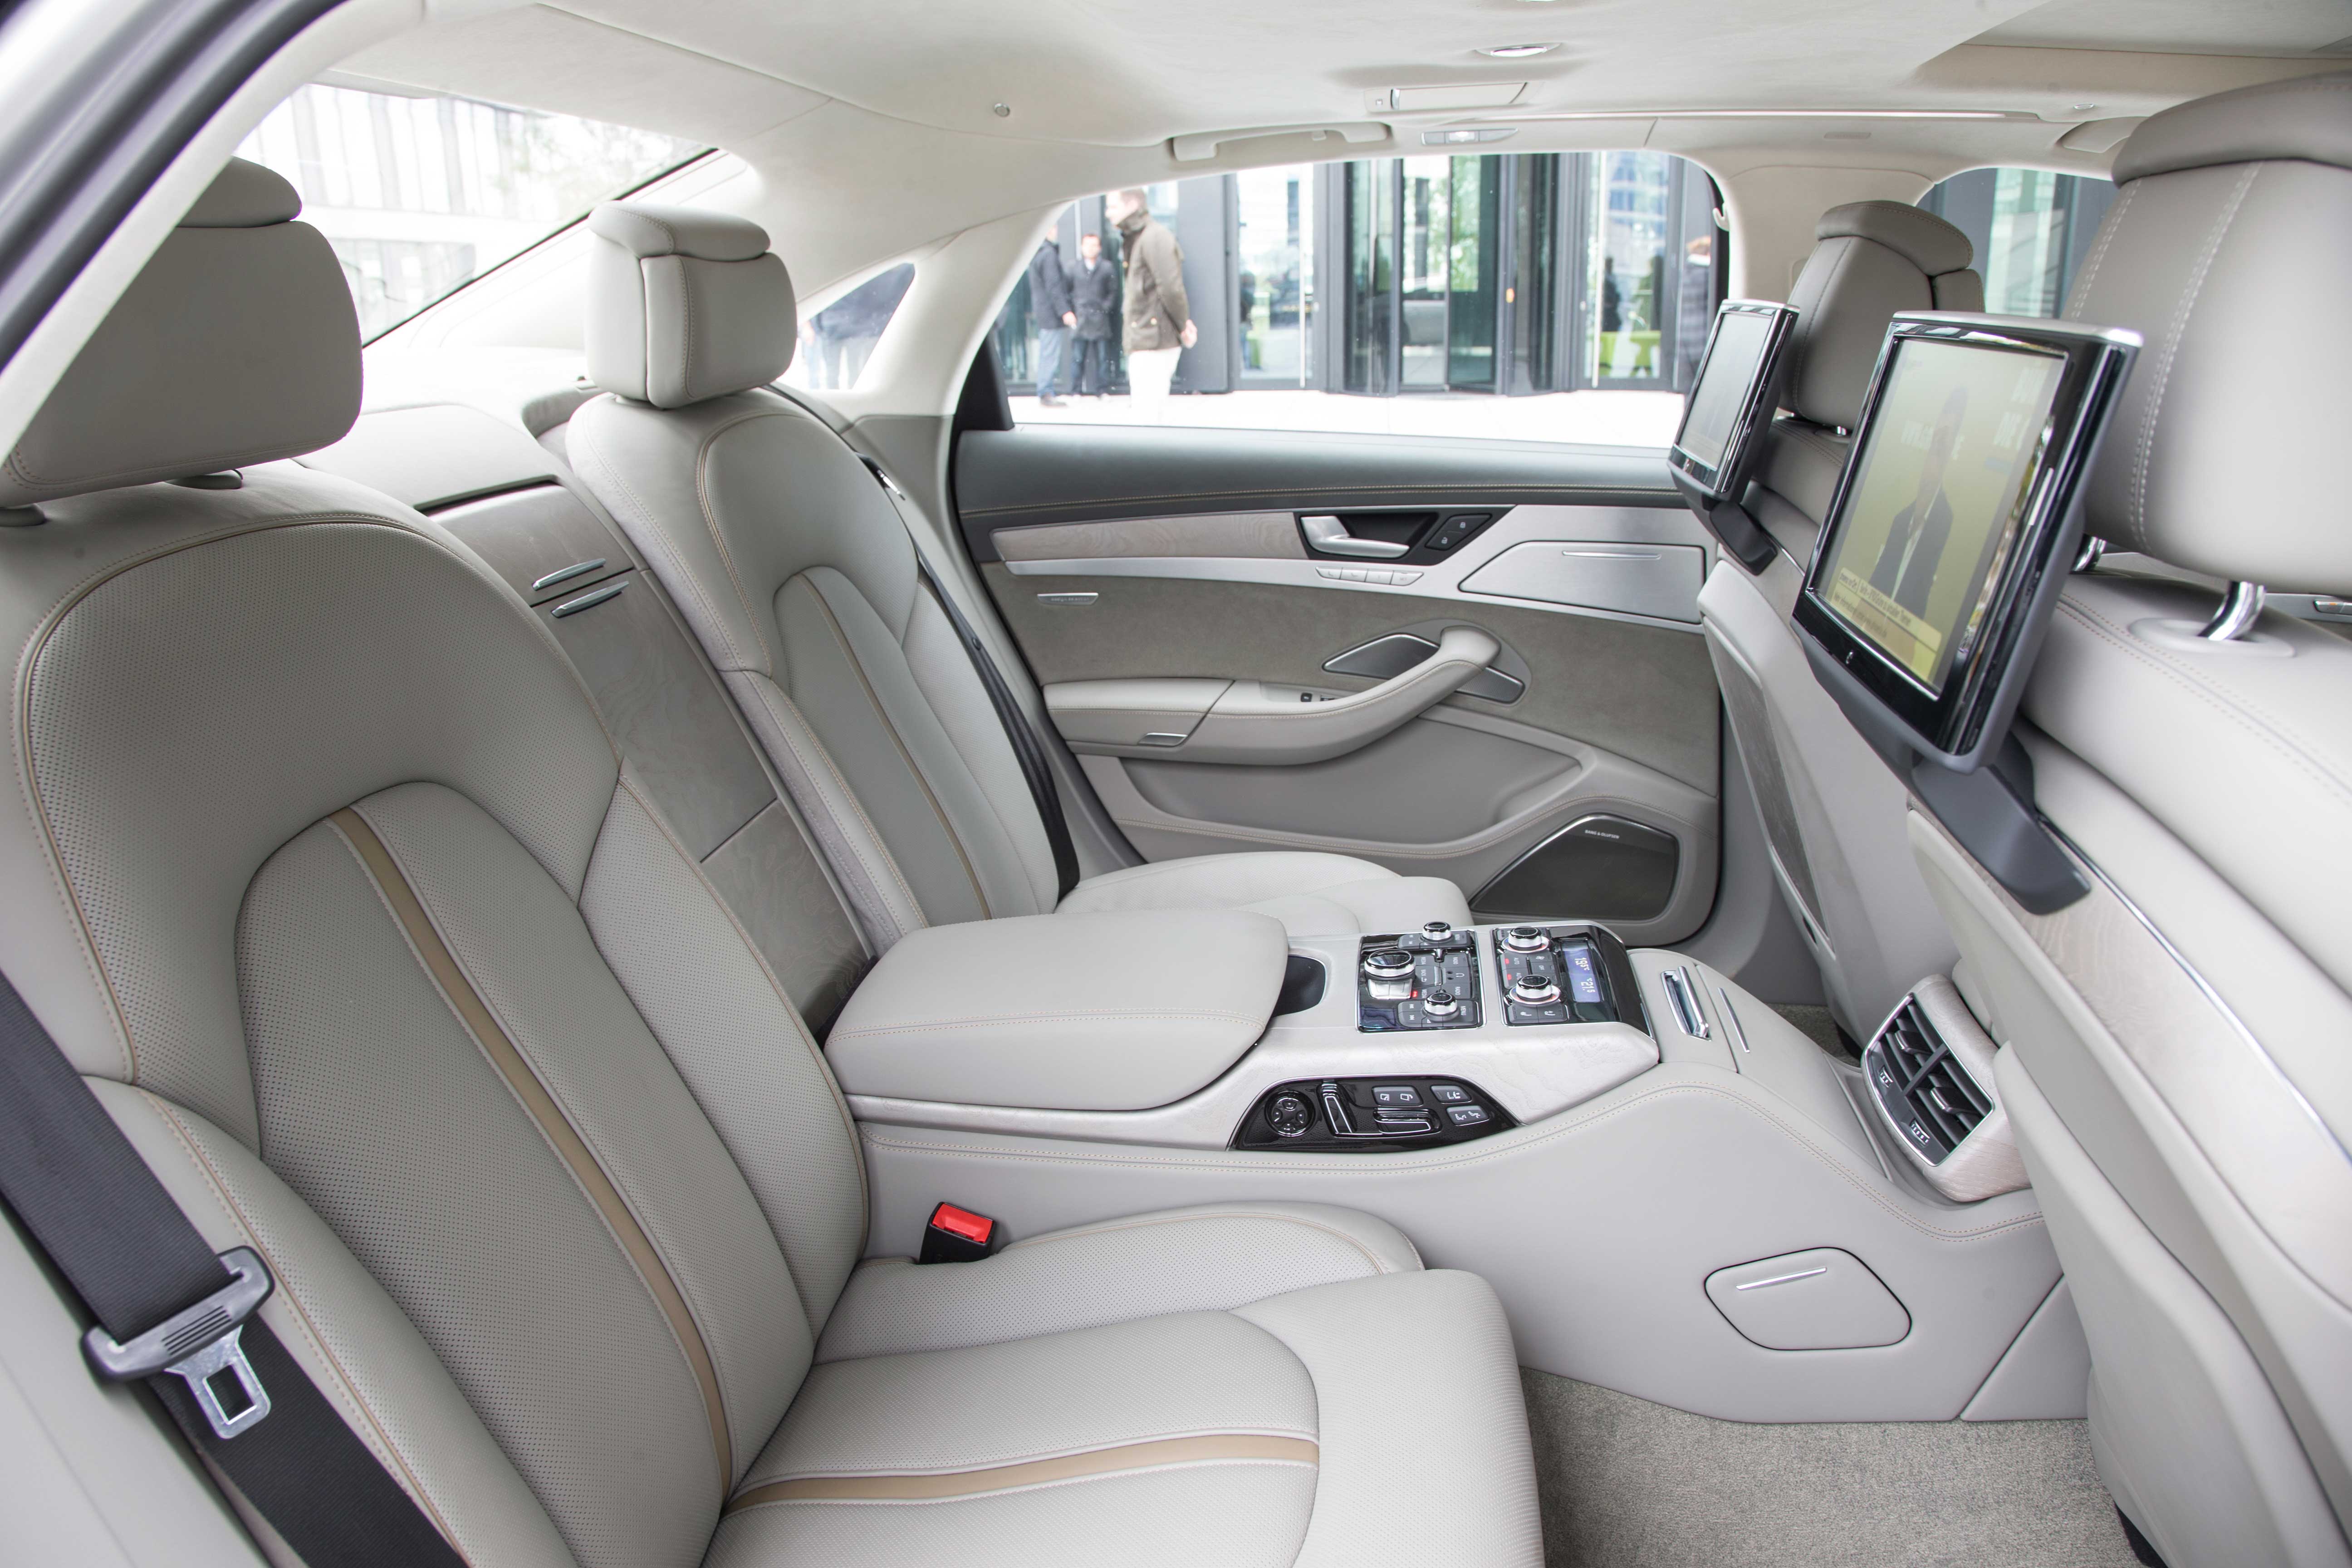 Fra bagsædet opleves Audi A8 som en luksuriøs arbejdsplads med mulighed for at tilkøbe alt i komfortudstyr  ikke mindst de effektive massagefunktioner i sæde og ryglæn. De to skærme med mulighed for at styre alt i multimedie-underholdning kan tilkøbes.